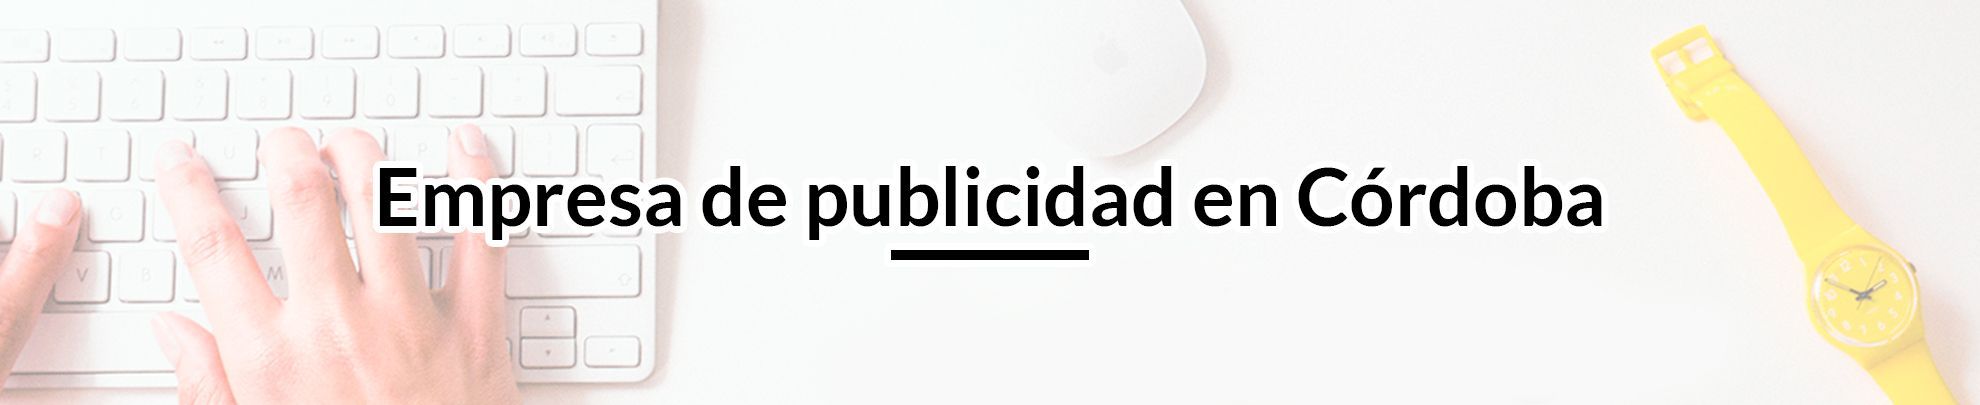 Empresa de publicidad en Córdoba empresa-de-publicidad-en-cordoba 